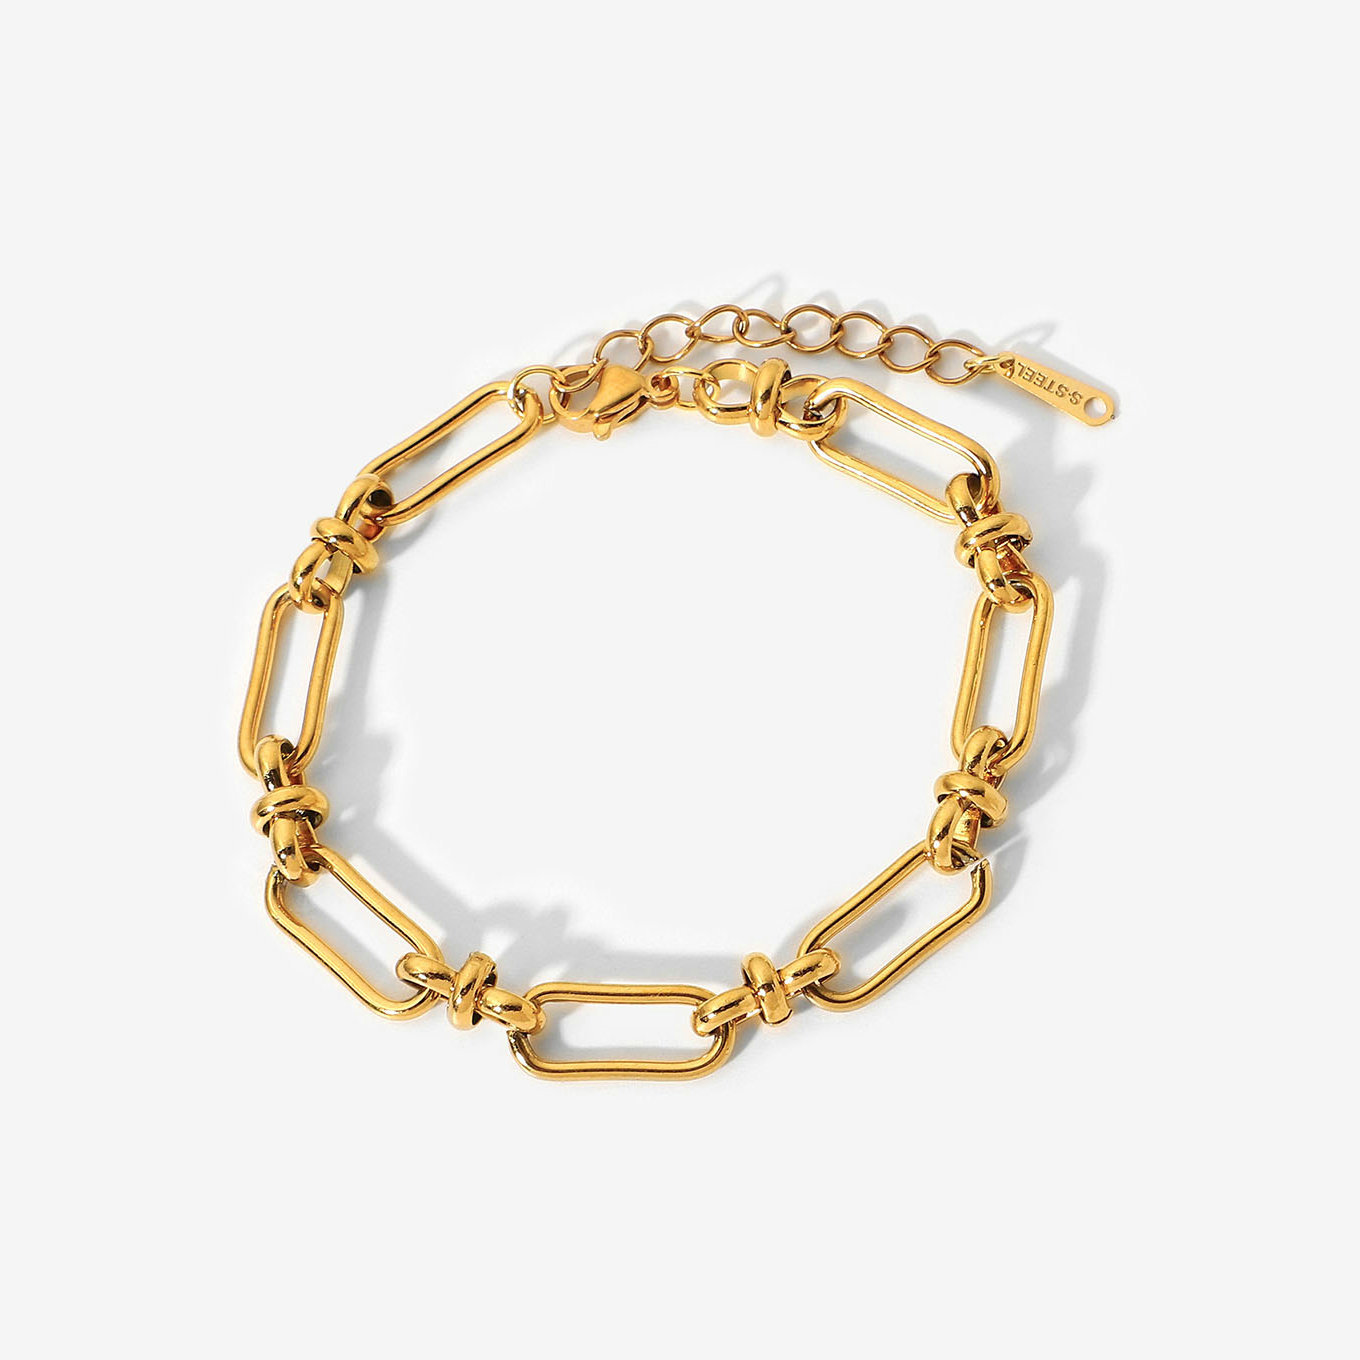 Wide chain cross buckle bracelet